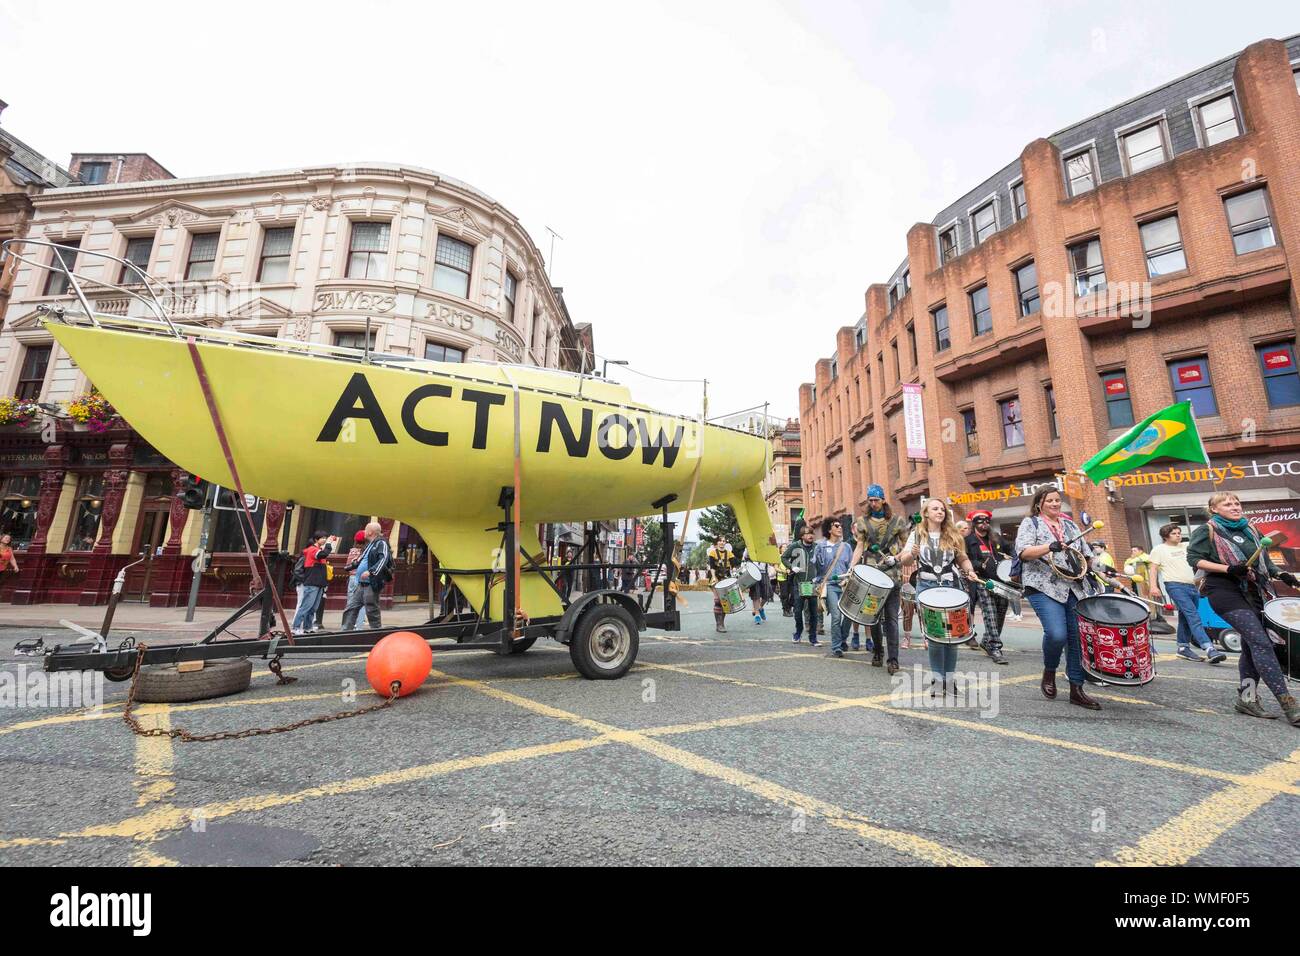 Extinción los manifestantes de la rebelión ocupan hoy Deansgate en el centro de la ciudad de Manchester (Viernes 30 de agosto de 2019) Foto de stock